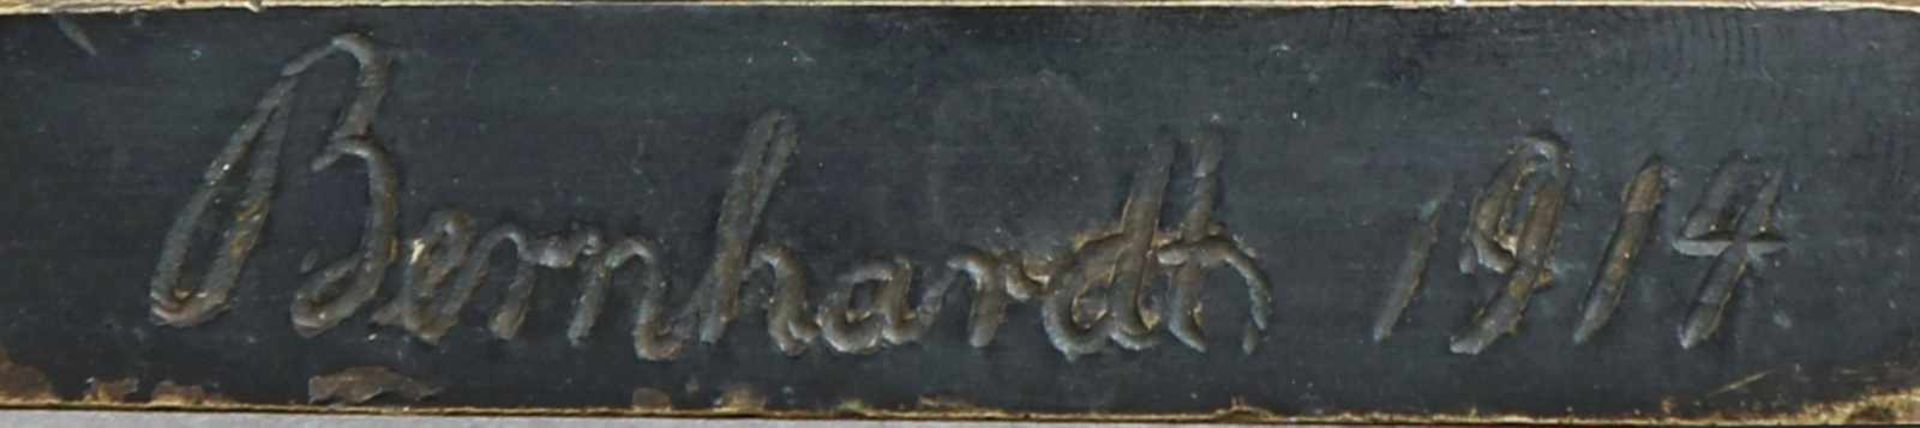 Bronzefigur ¨Stehender Fechter mit Florett¨dunkel und partiell gold patiniert, verso signiert ¨ - Bild 3 aus 3